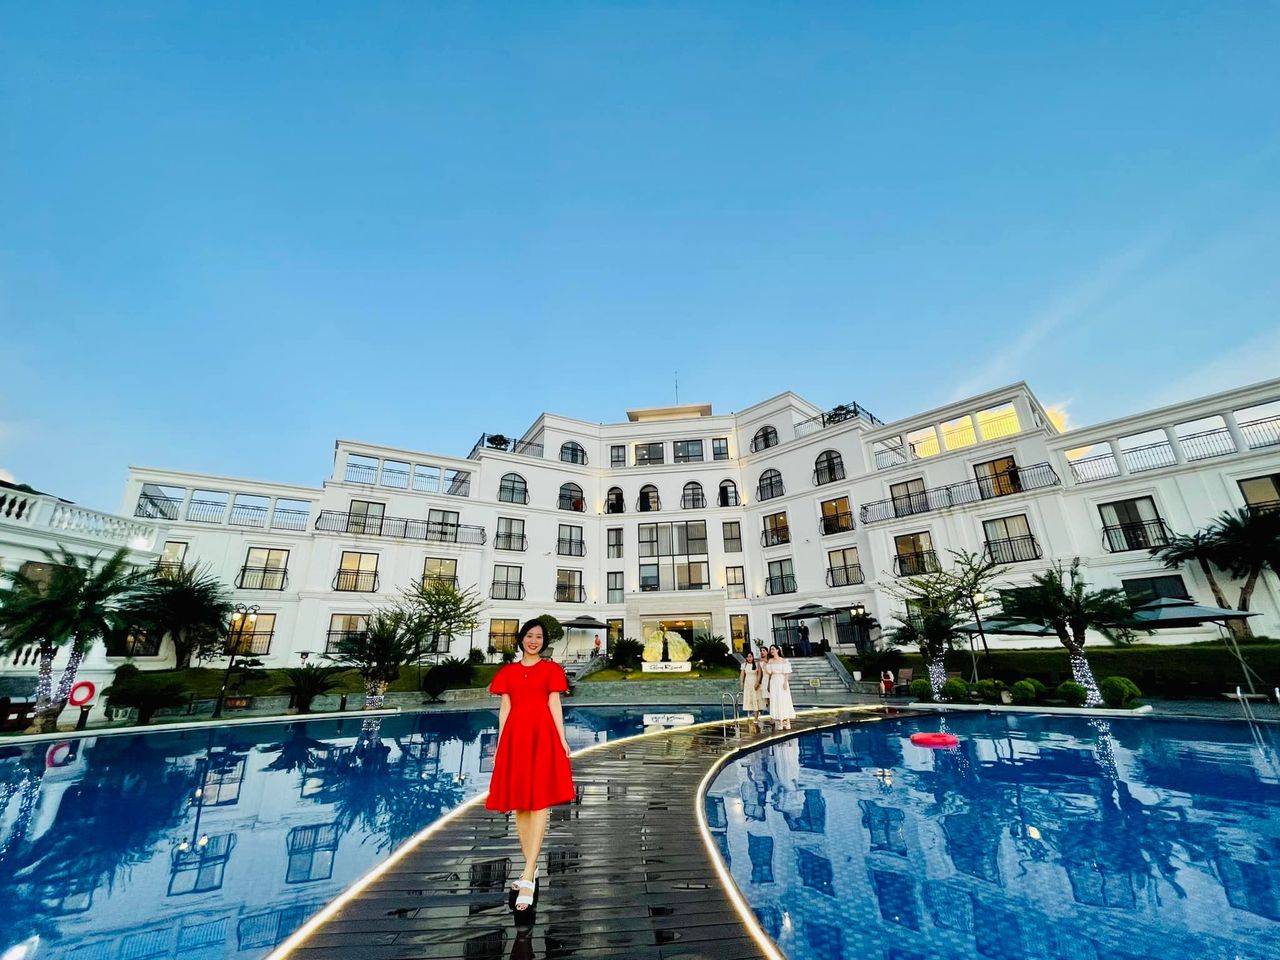 Những khu du lịch nghỉ dưỡng gần Hà Nội vừa đẹp vừa rộng phù hợp để các công ty tổ chức hoạt động tập thể cho nhân viên - ảnh 11